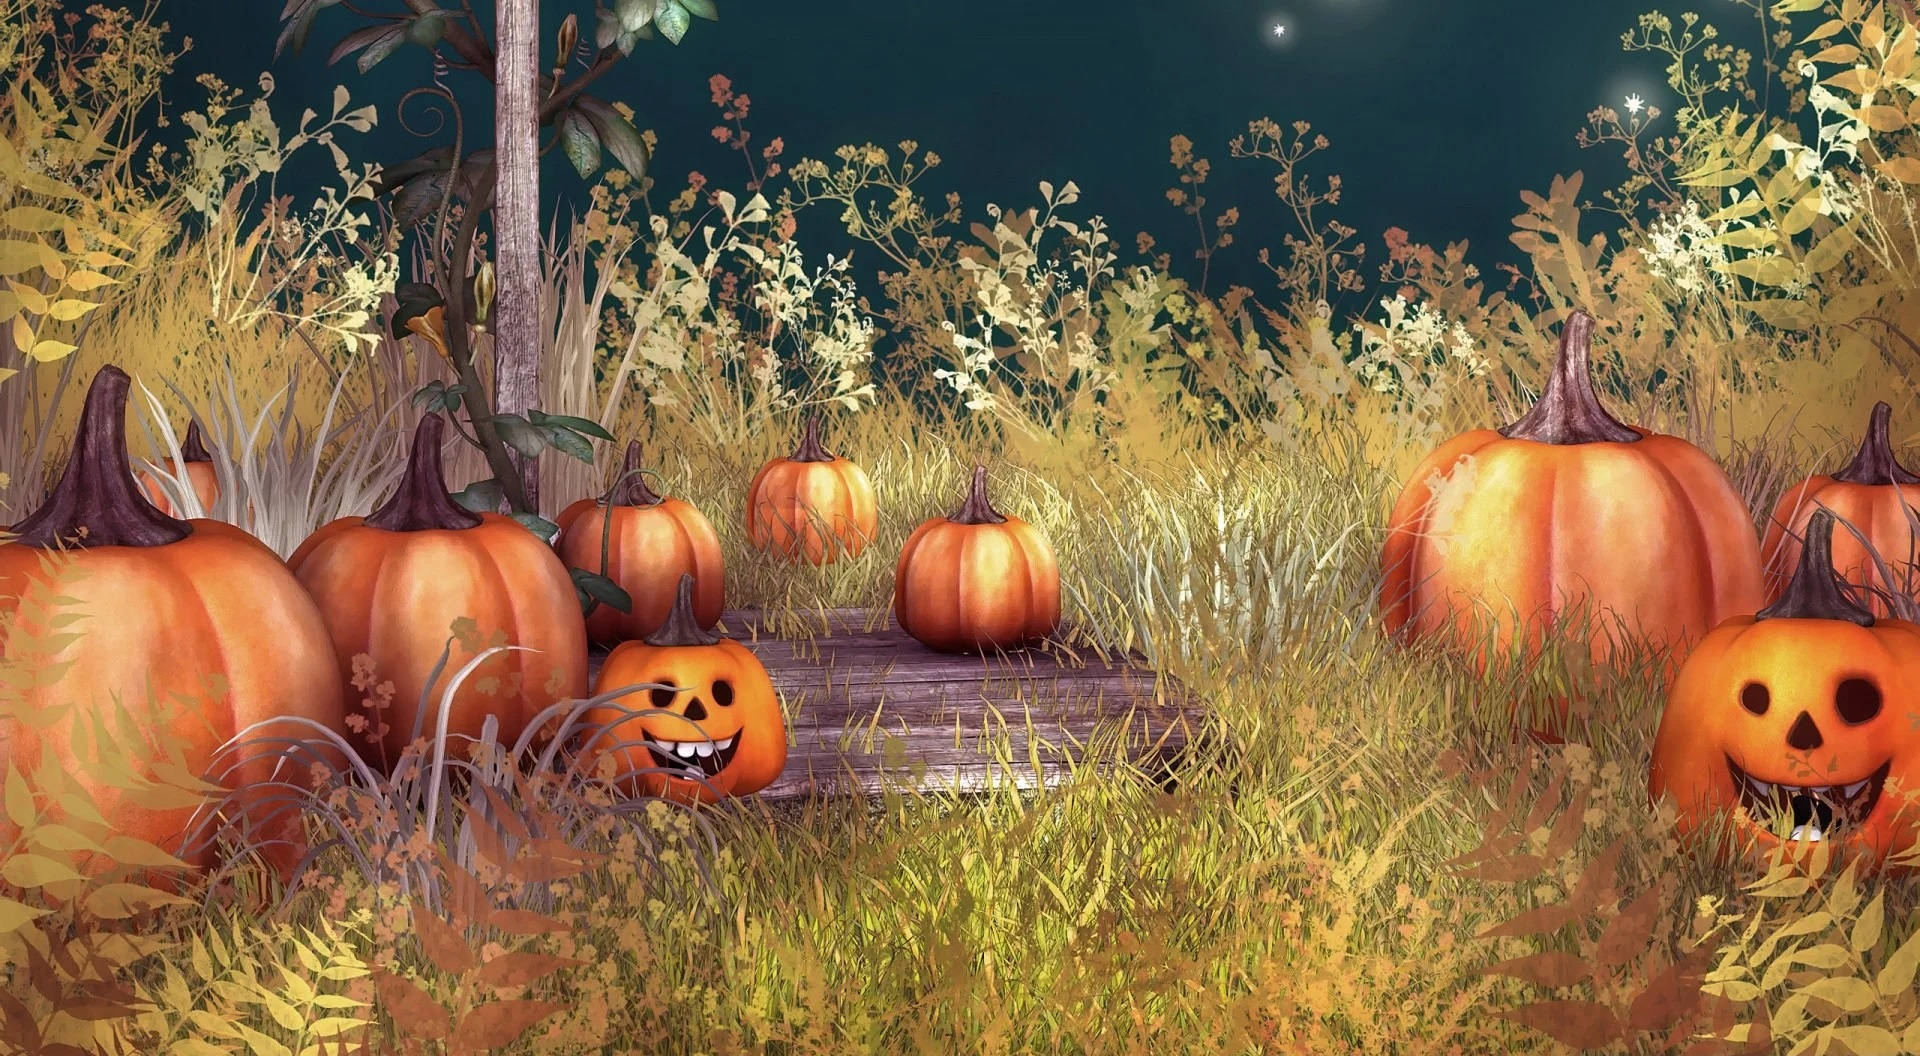 Vintage Halloween Pumpkins In Grassland Background